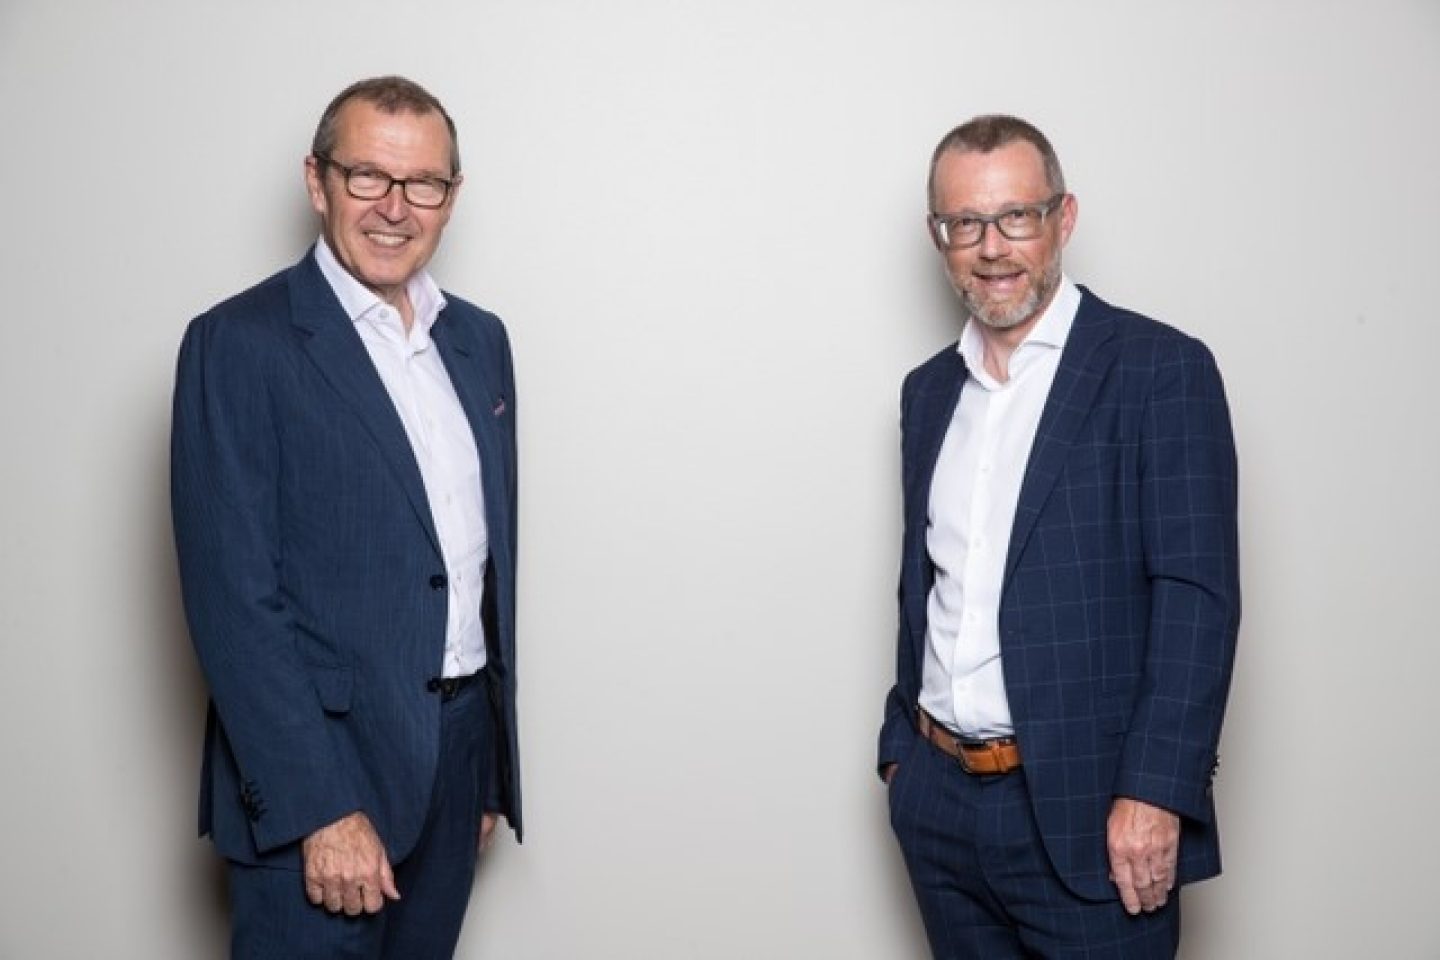 Markus Hongler (sinistra), CEO della Mobiliare, e Heinz Huber, CEO di Raiffeisen Svizzera